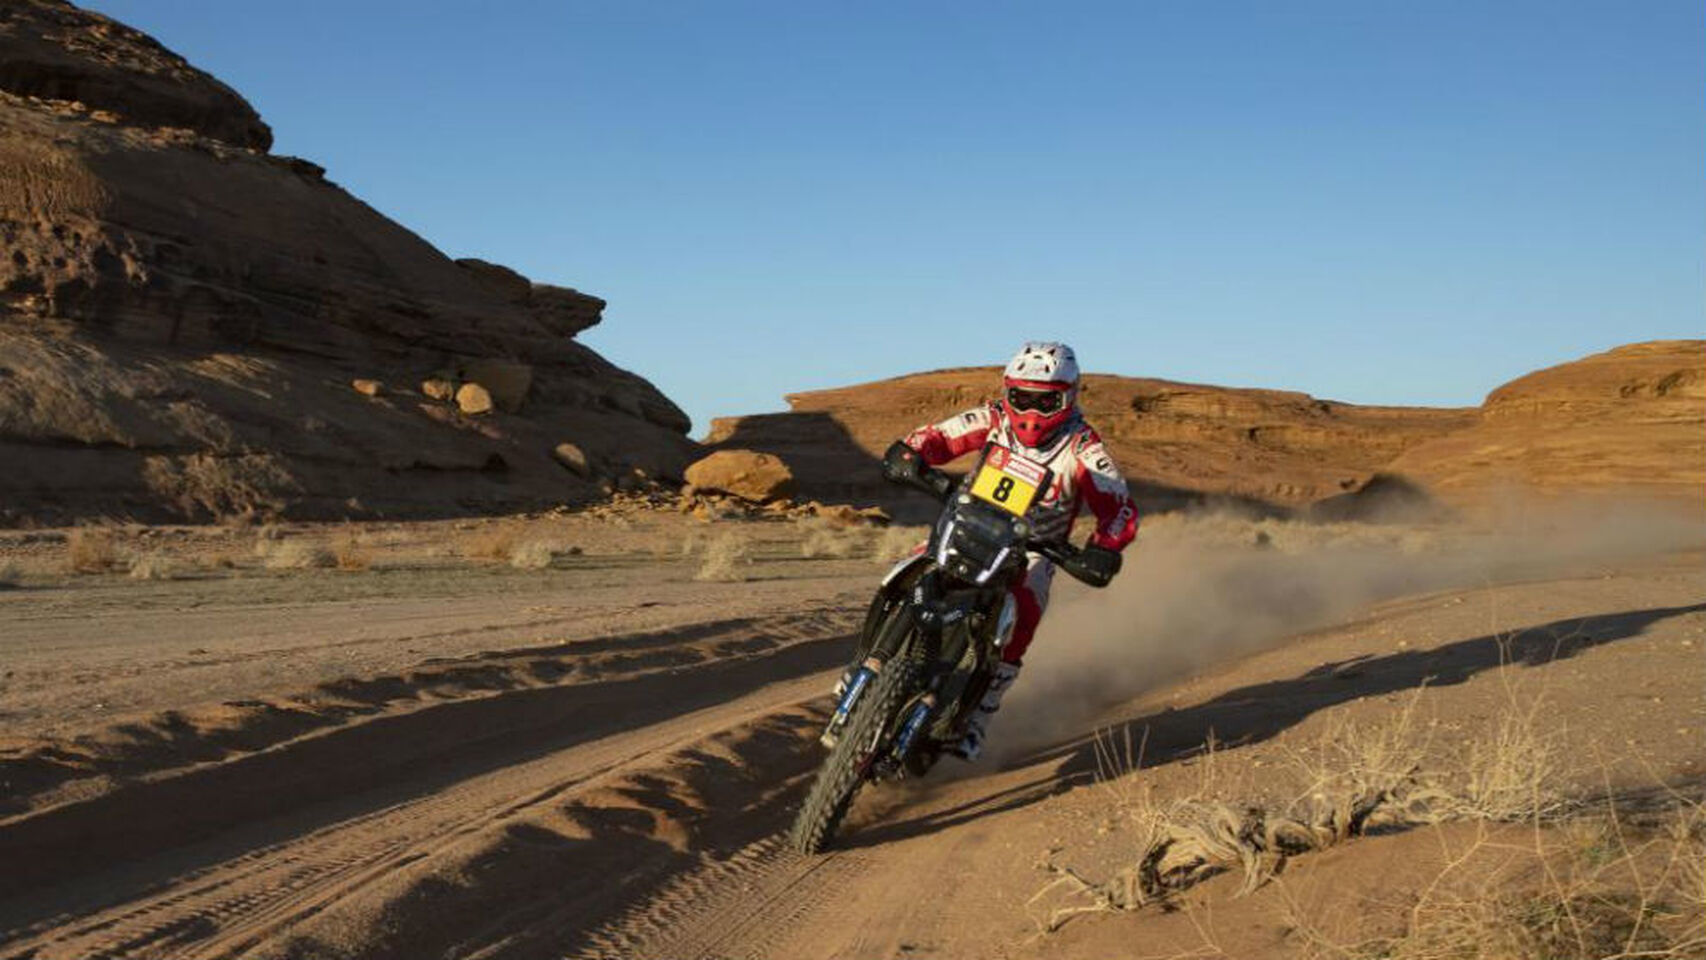 Rally_Dakar-Deportes_de_motor-Accidentes-Motor_459214821_142249529_1706x960